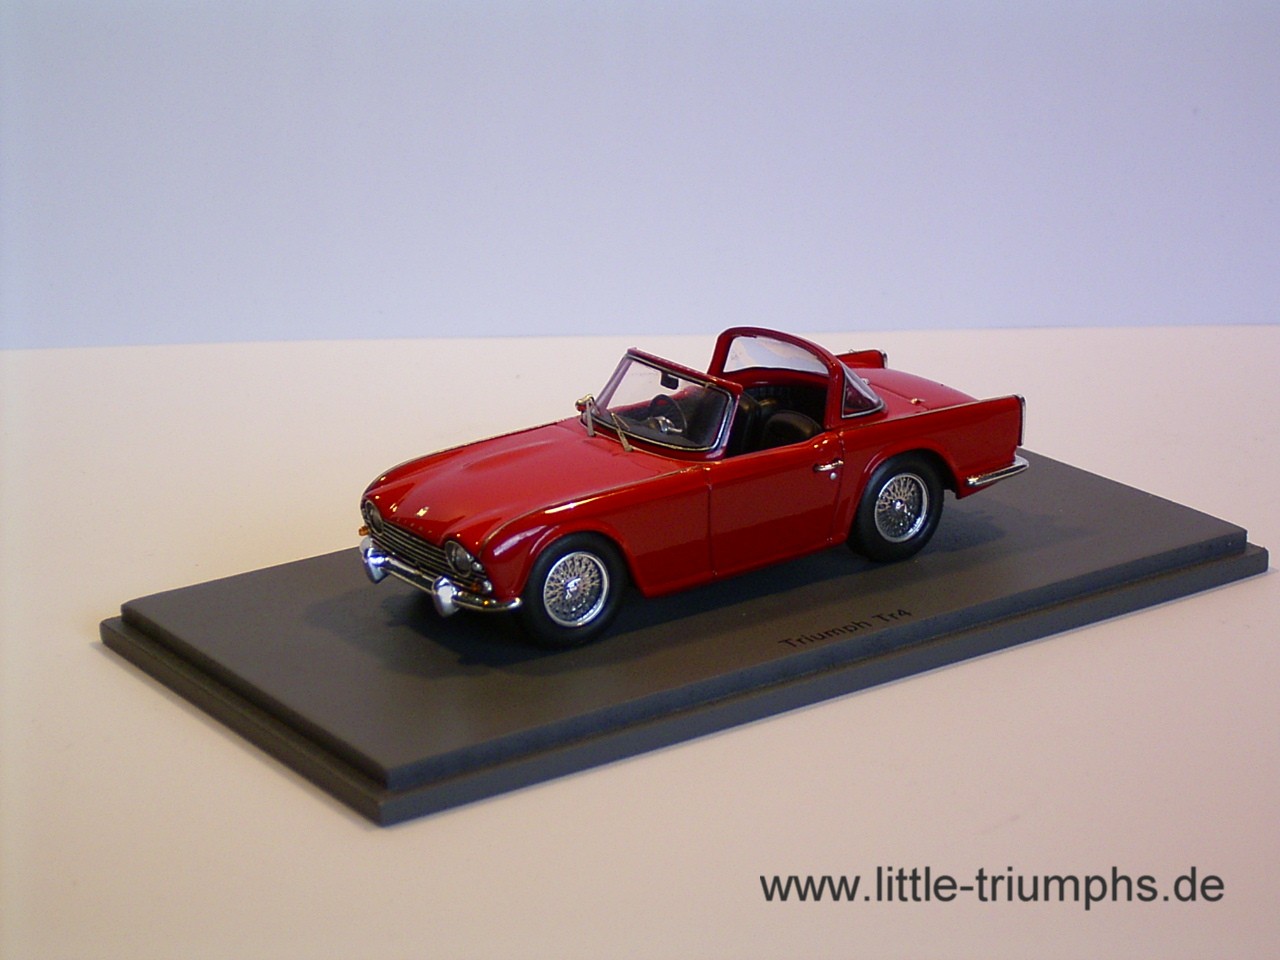 Triumph TR 4